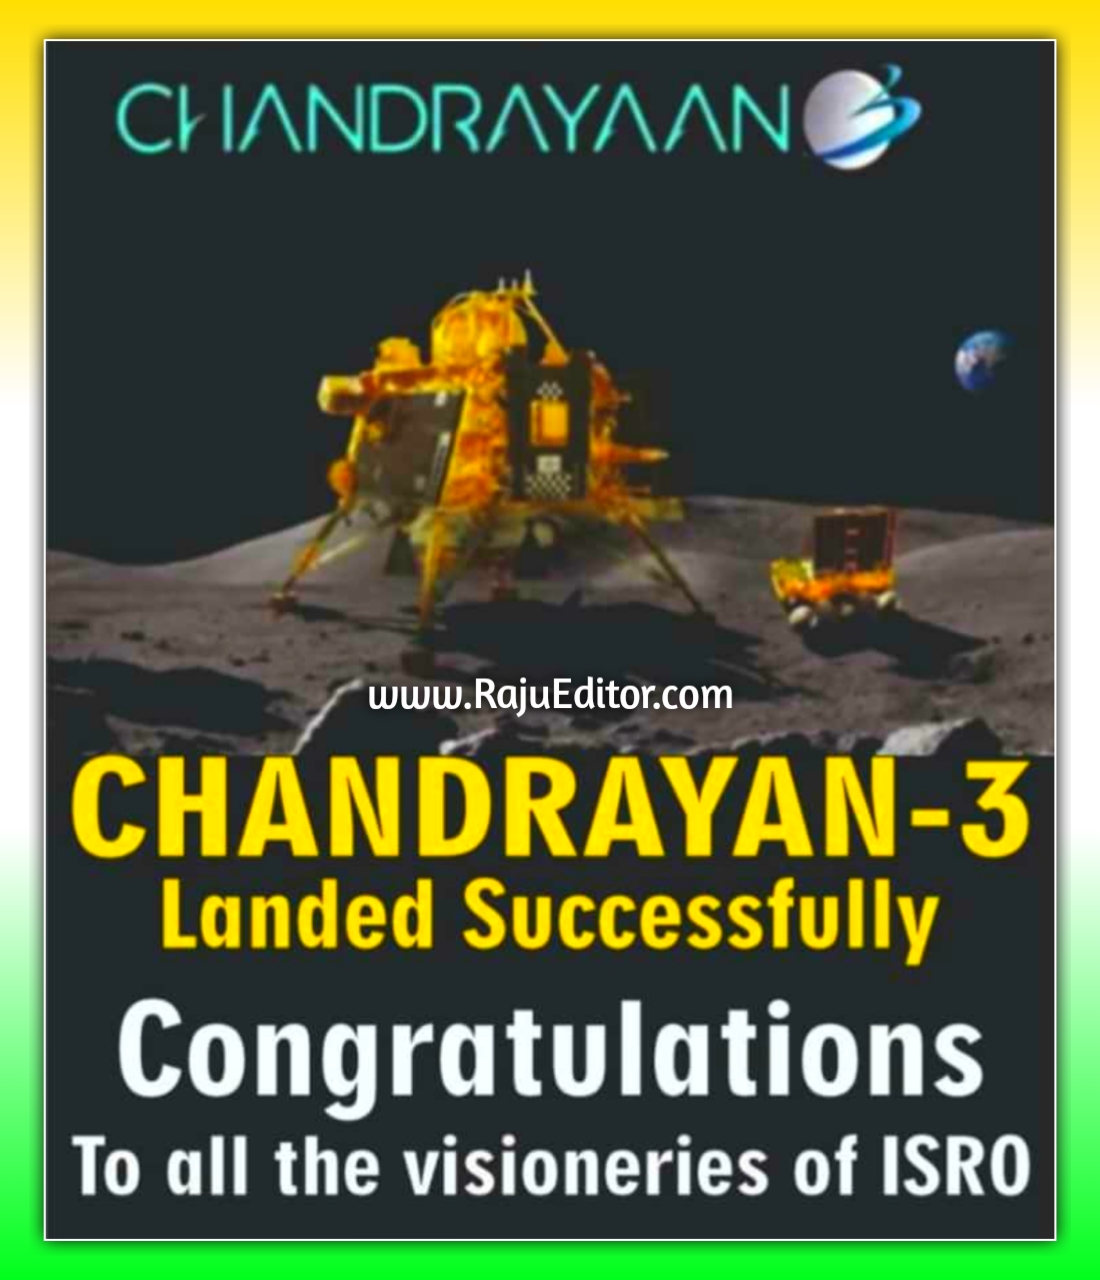 चंद्रयान-3 की कामयाबी पर बांटें खुशियां, इन संदेशों से गौरवपूर्ण क्षणों की साझा करें शुभकामनाएं